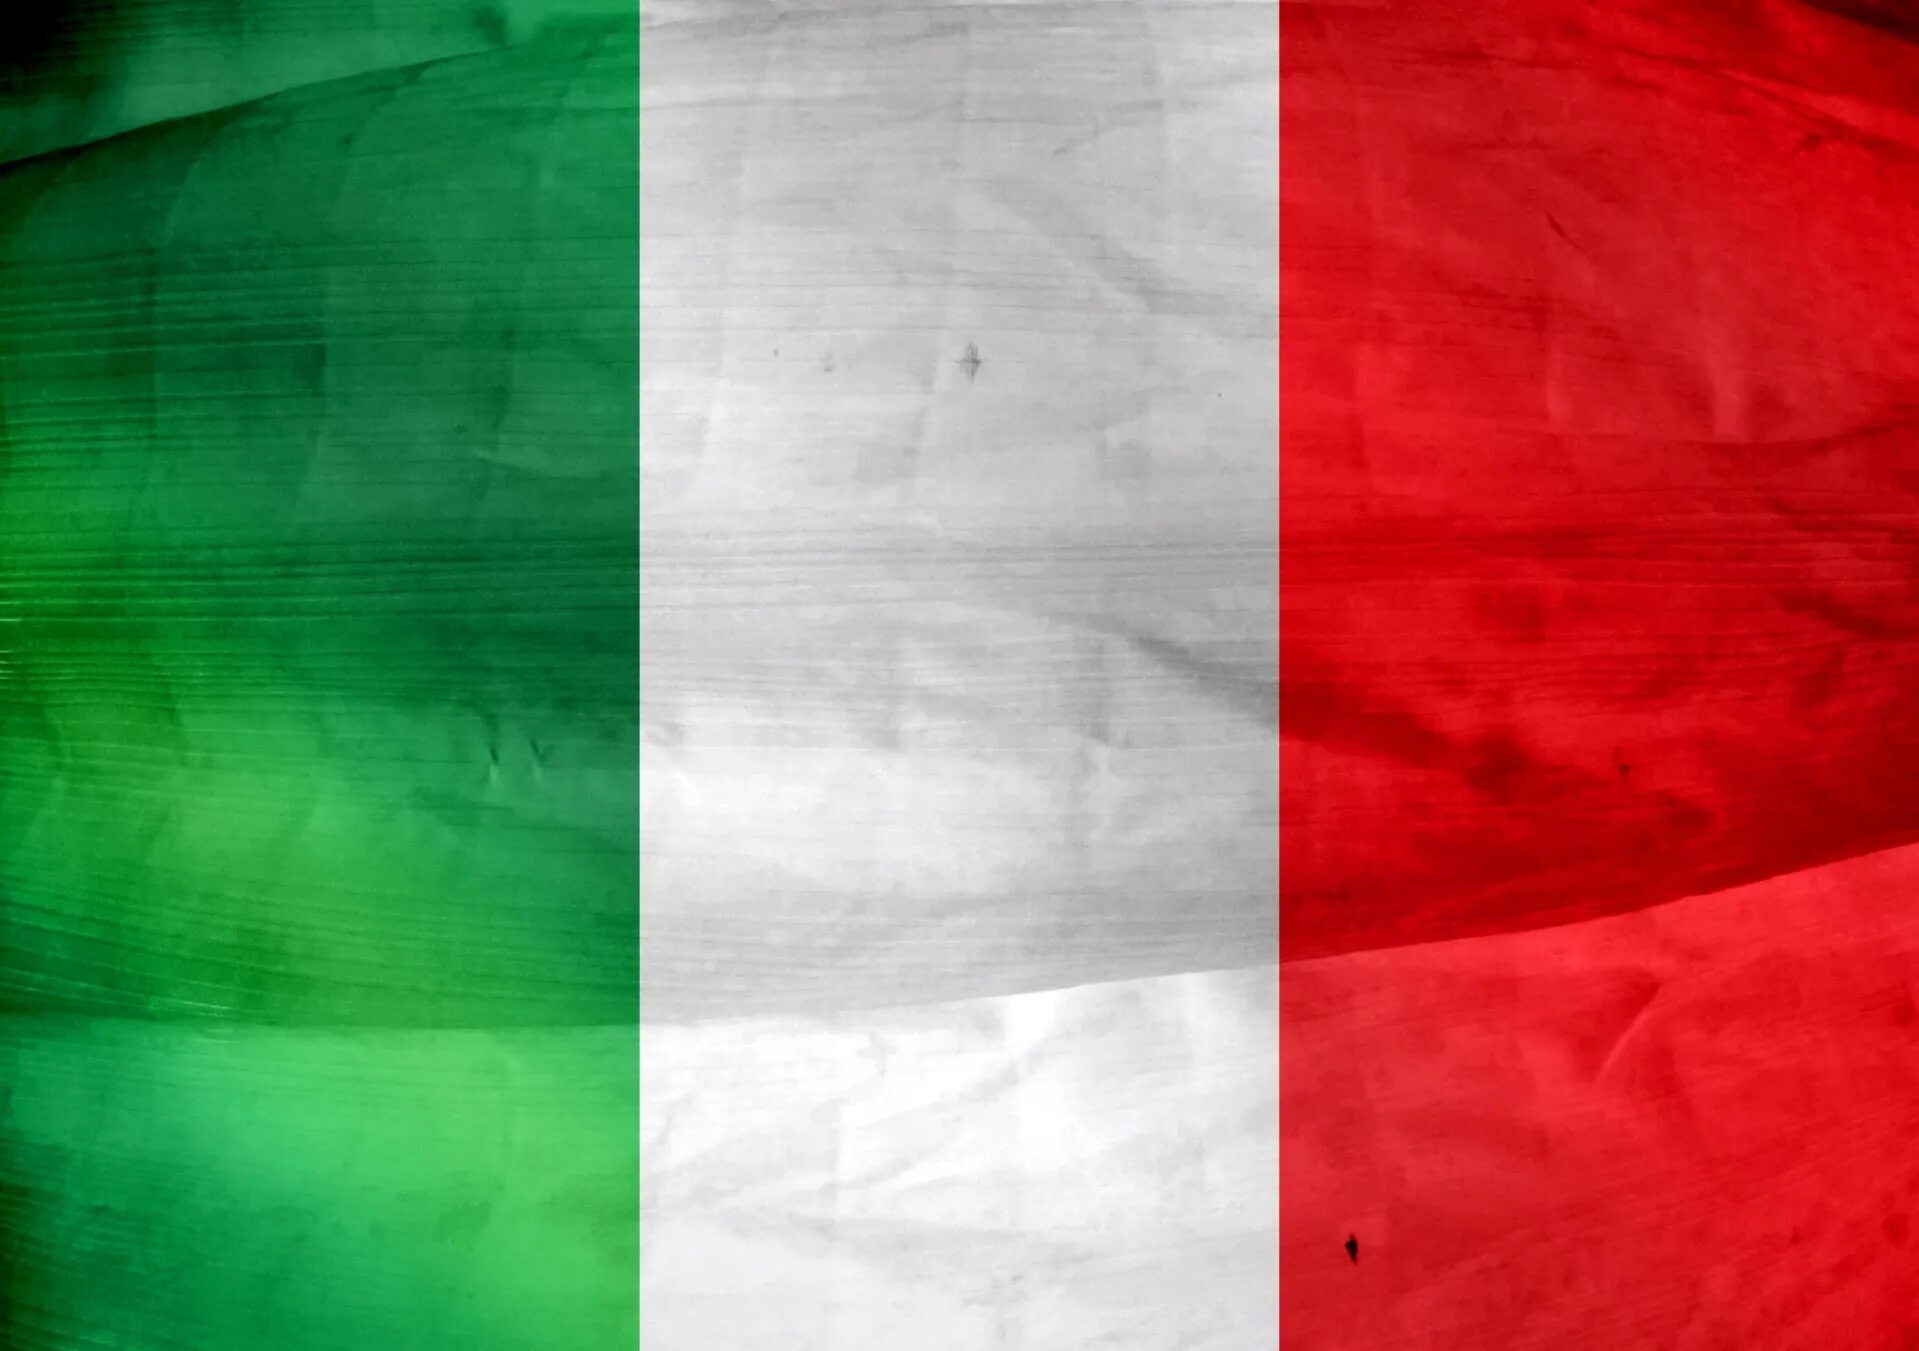 Код флага италии. Национальный флаг Италии. Флаг Италии 1939. Флаг Италии 2021. Флаг Италии 1848.